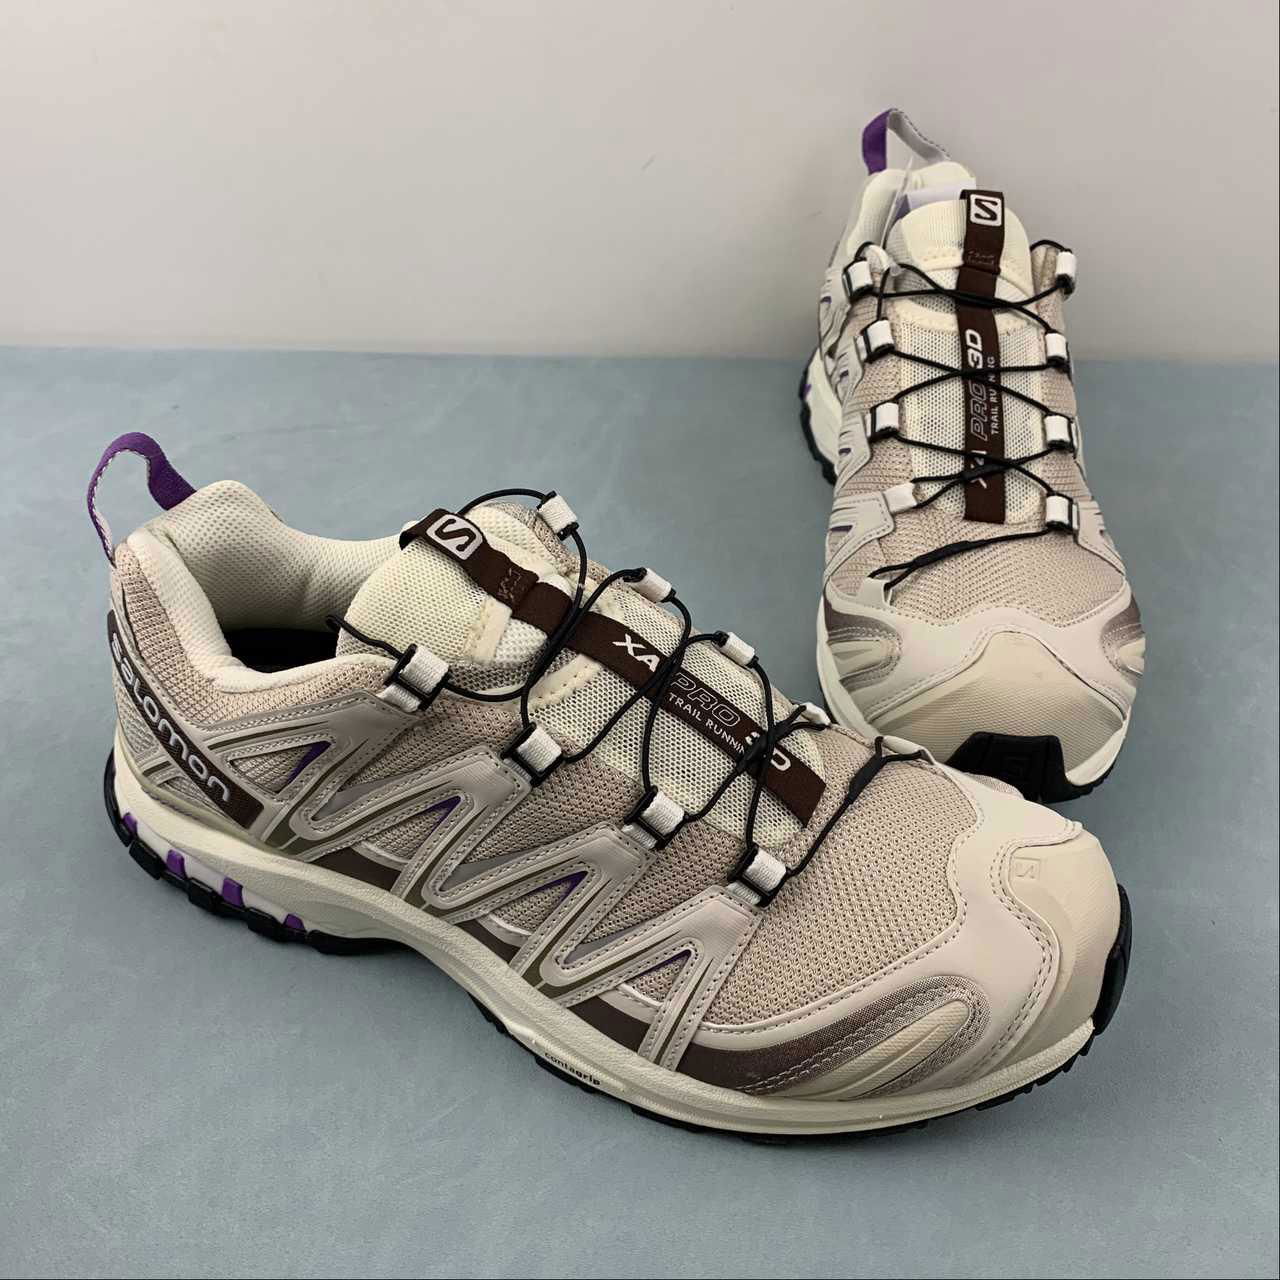 Salomon XA PRO-3D Retro Functional Fashion casual running shoe 414680